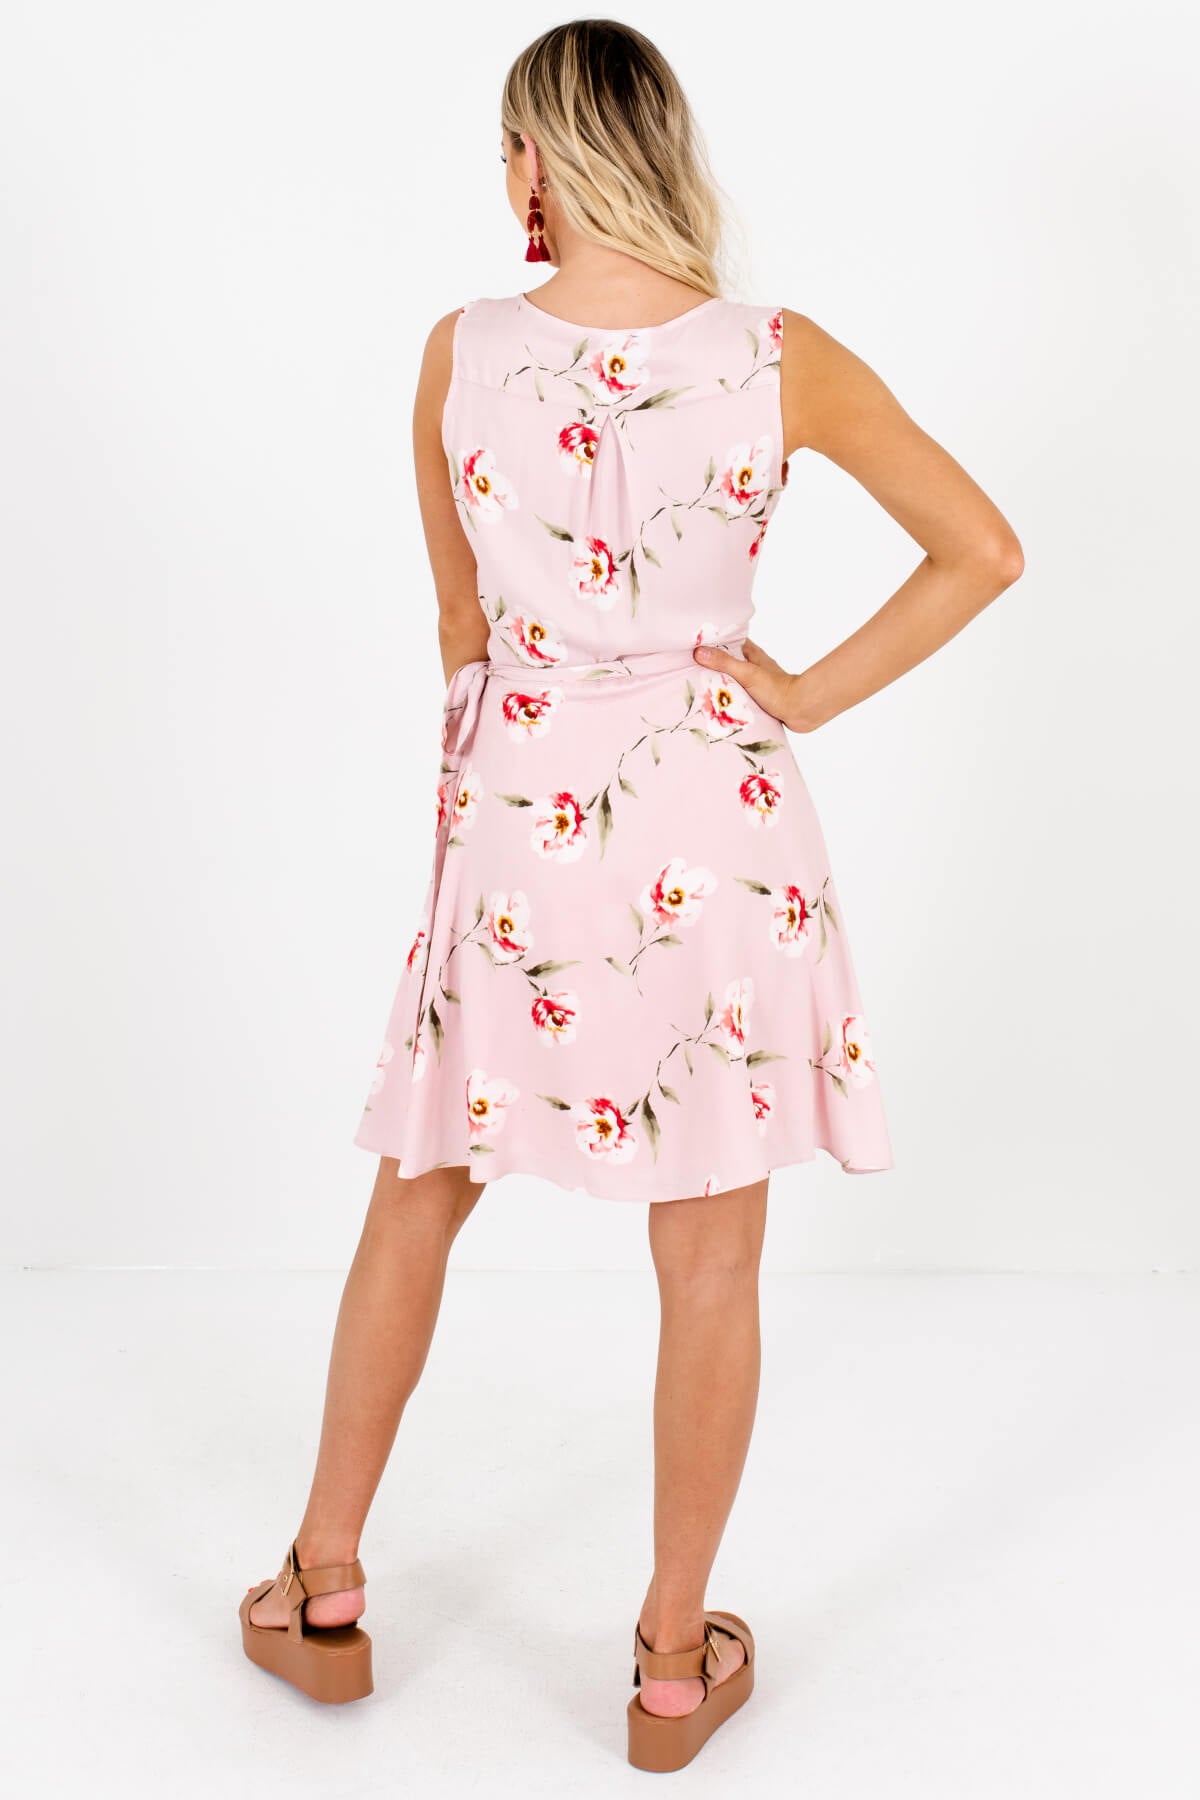 Women's Pink Wrap Style Boutique Mini Dresses